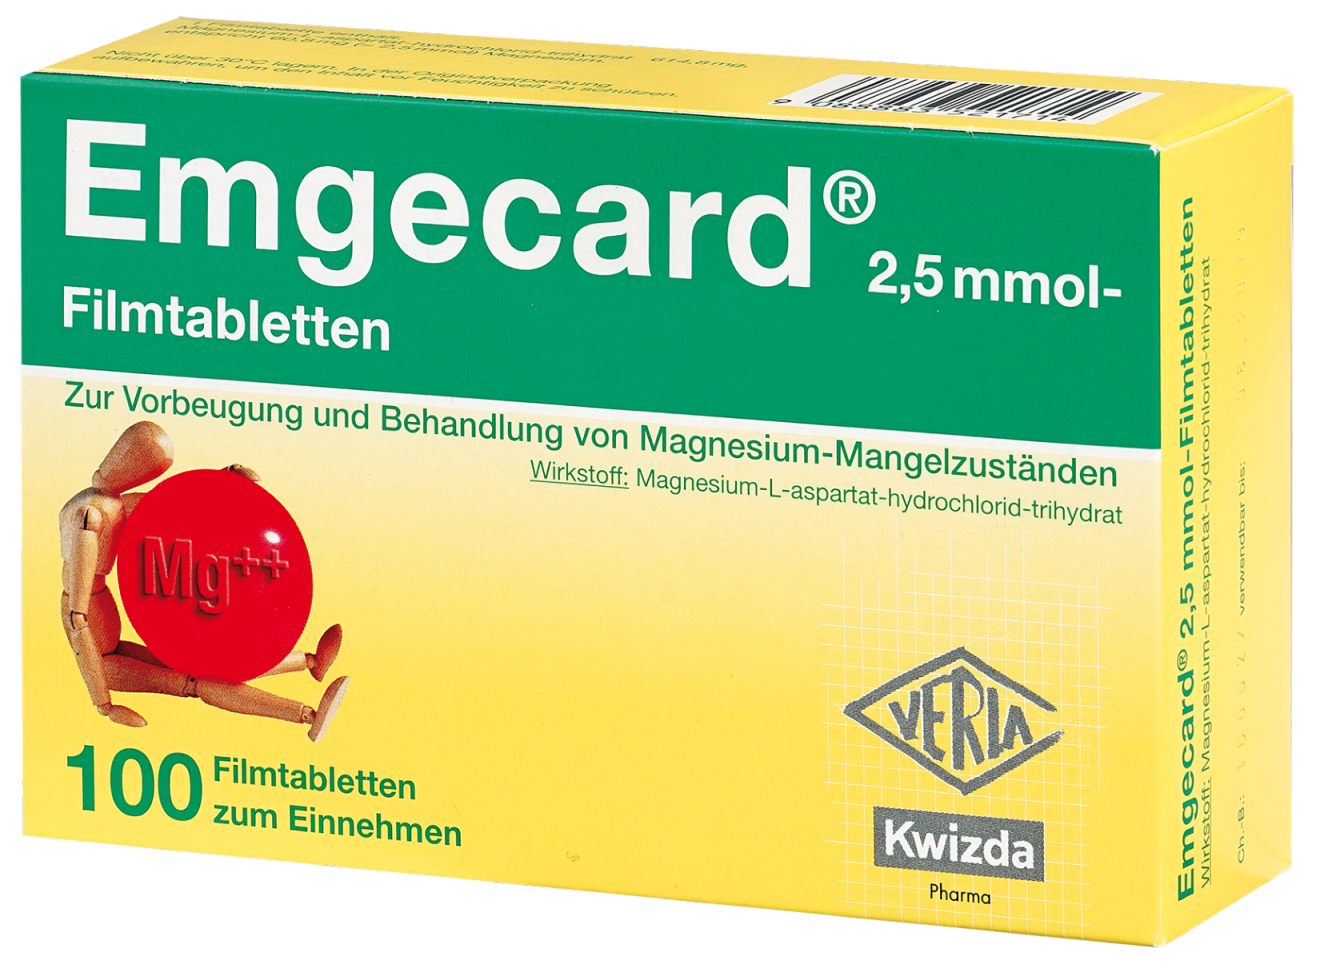 Abbildung Emgecard 2,5 mmol - Filmtabletten